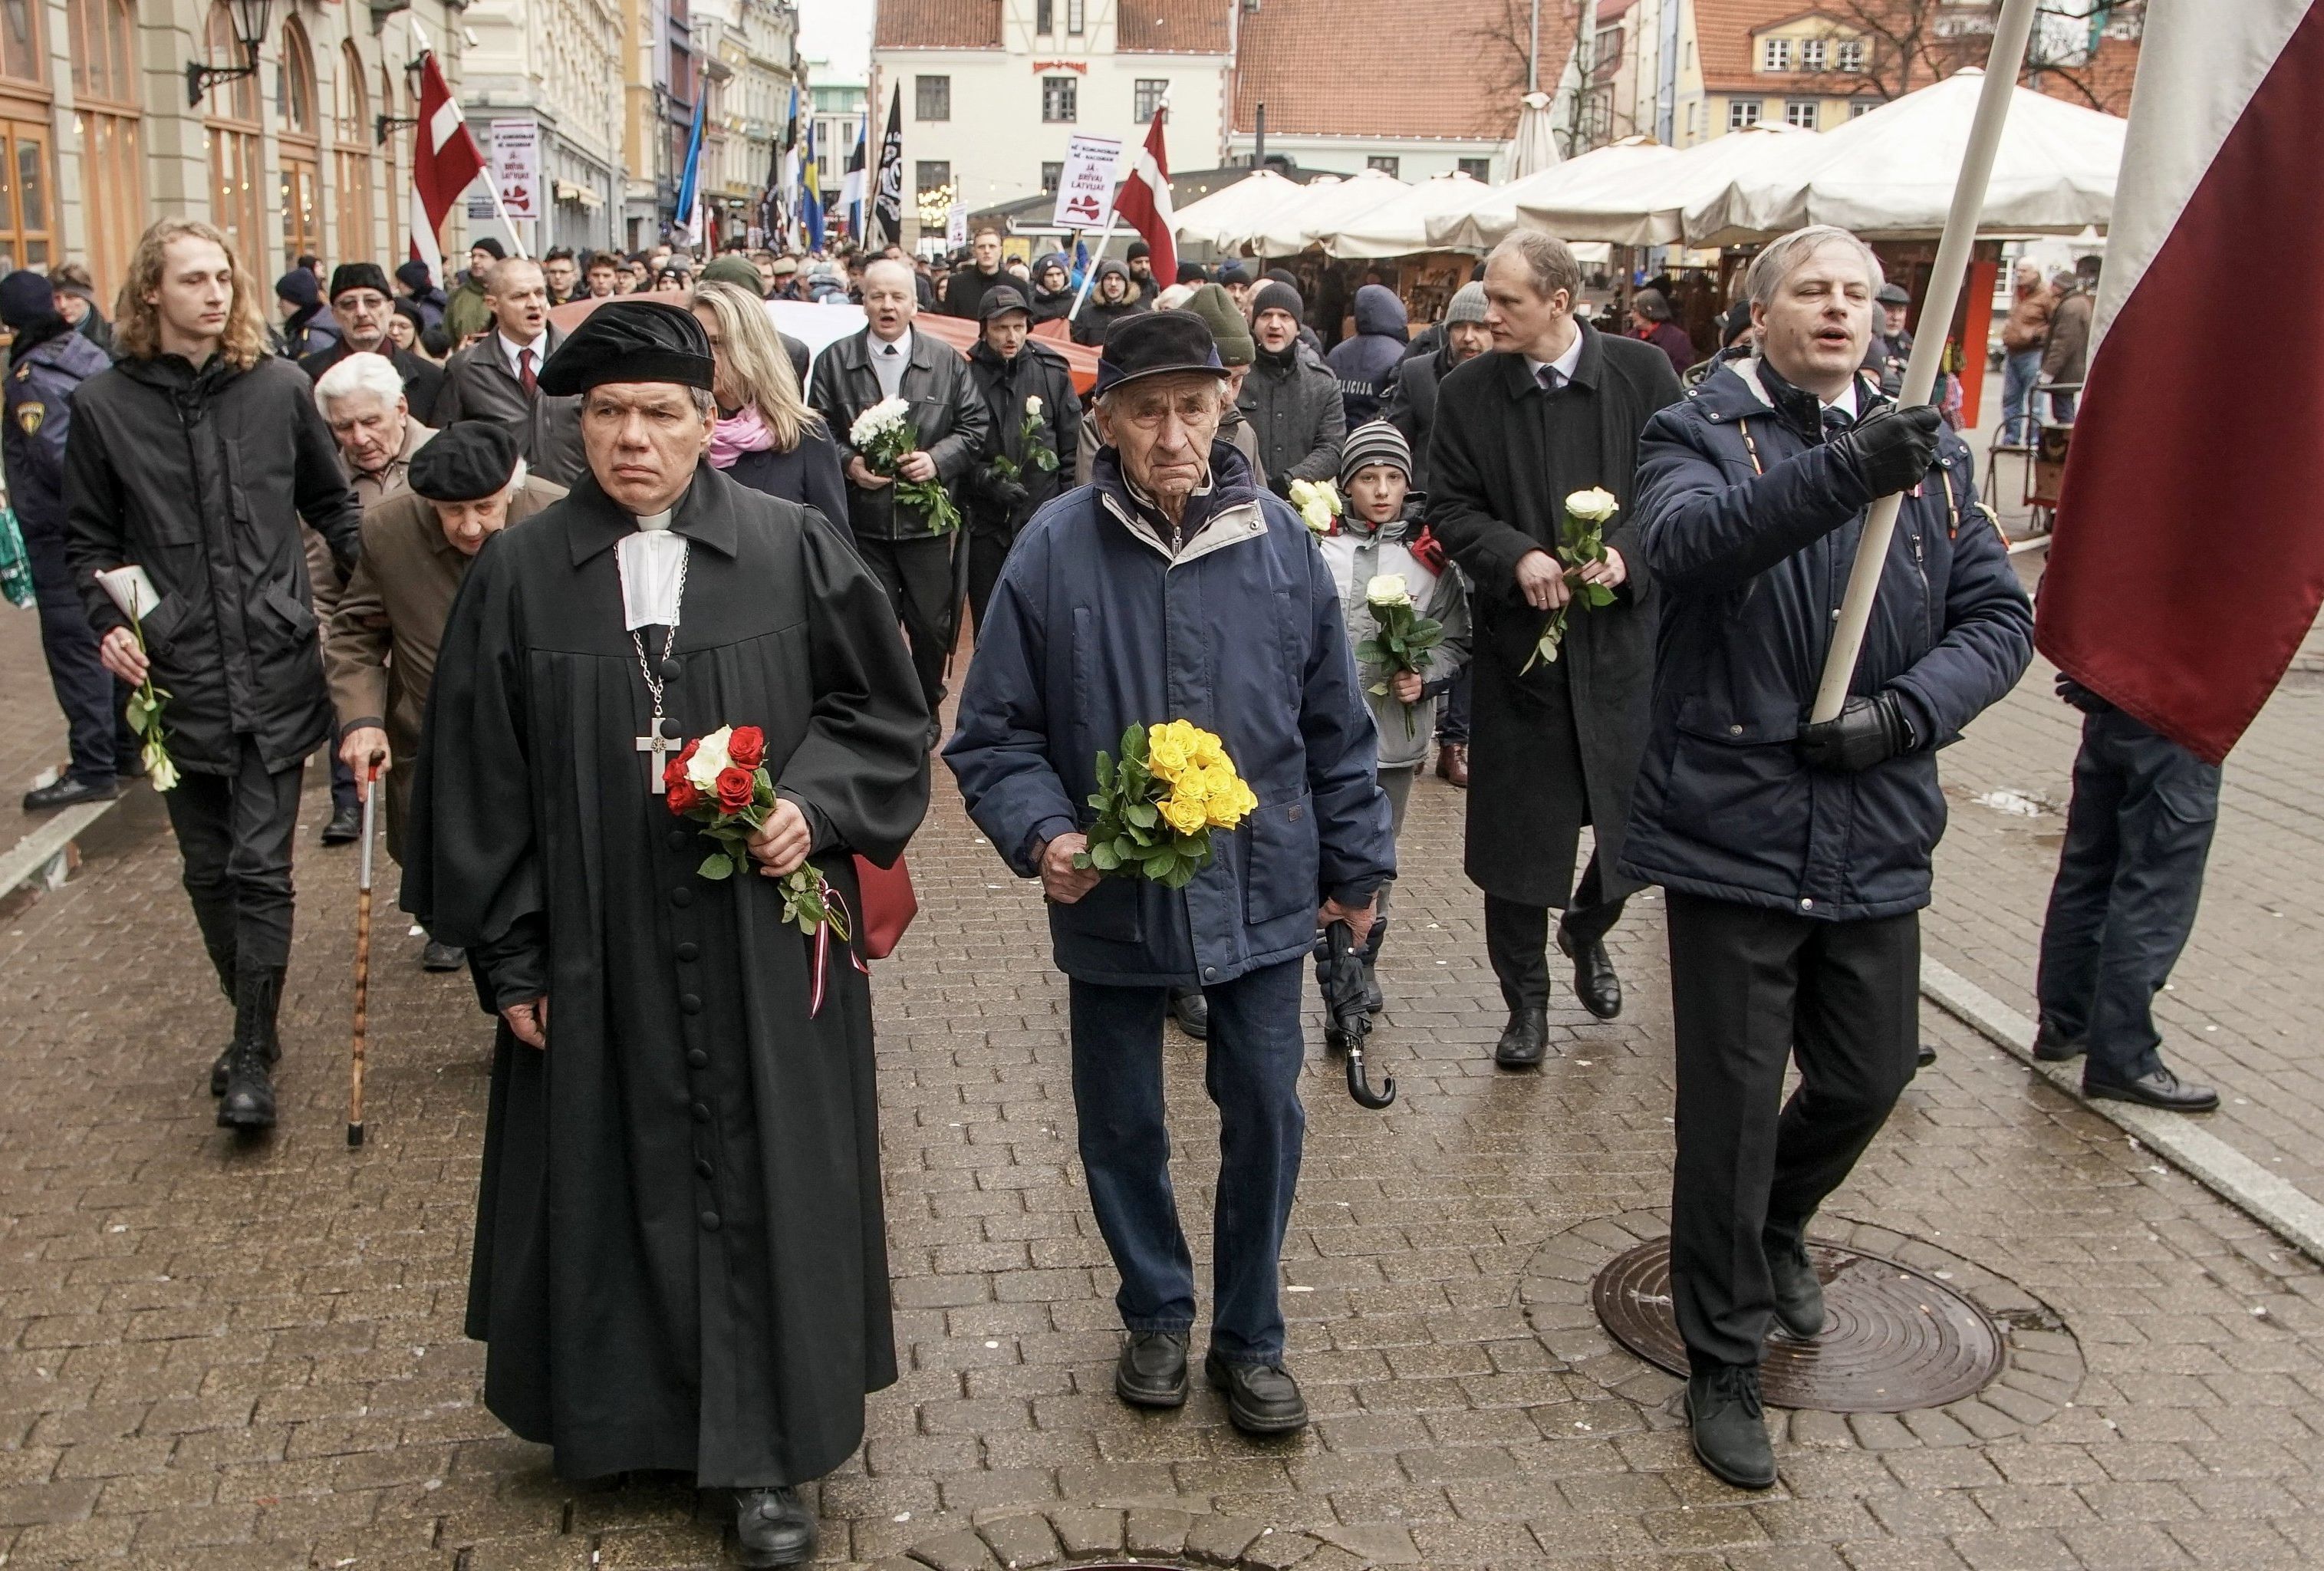 Шествие легионеров Waffen SS в Риге. Во главе колонны Пастор Гунтис Калме, 16 марта 2019